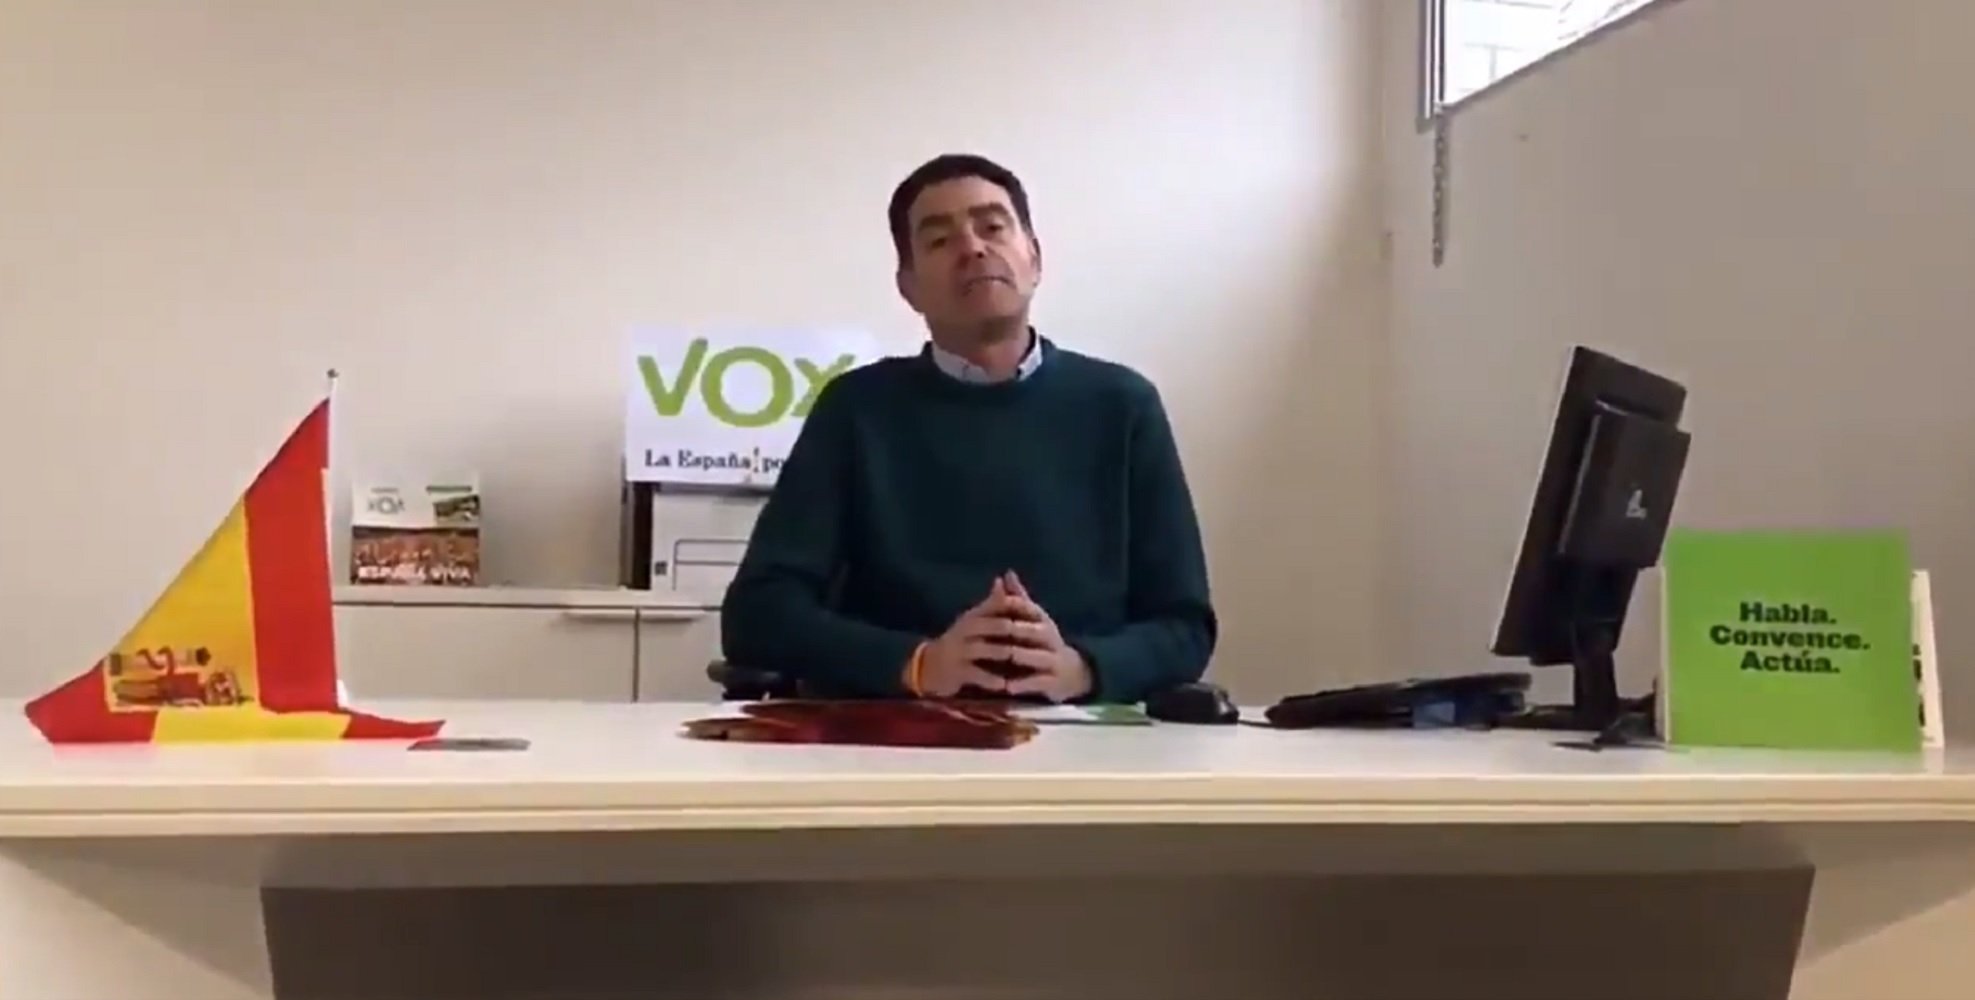 VÍDEO: El detenido por delitos sexuales en Lleida se presenta como dirigente de Vox